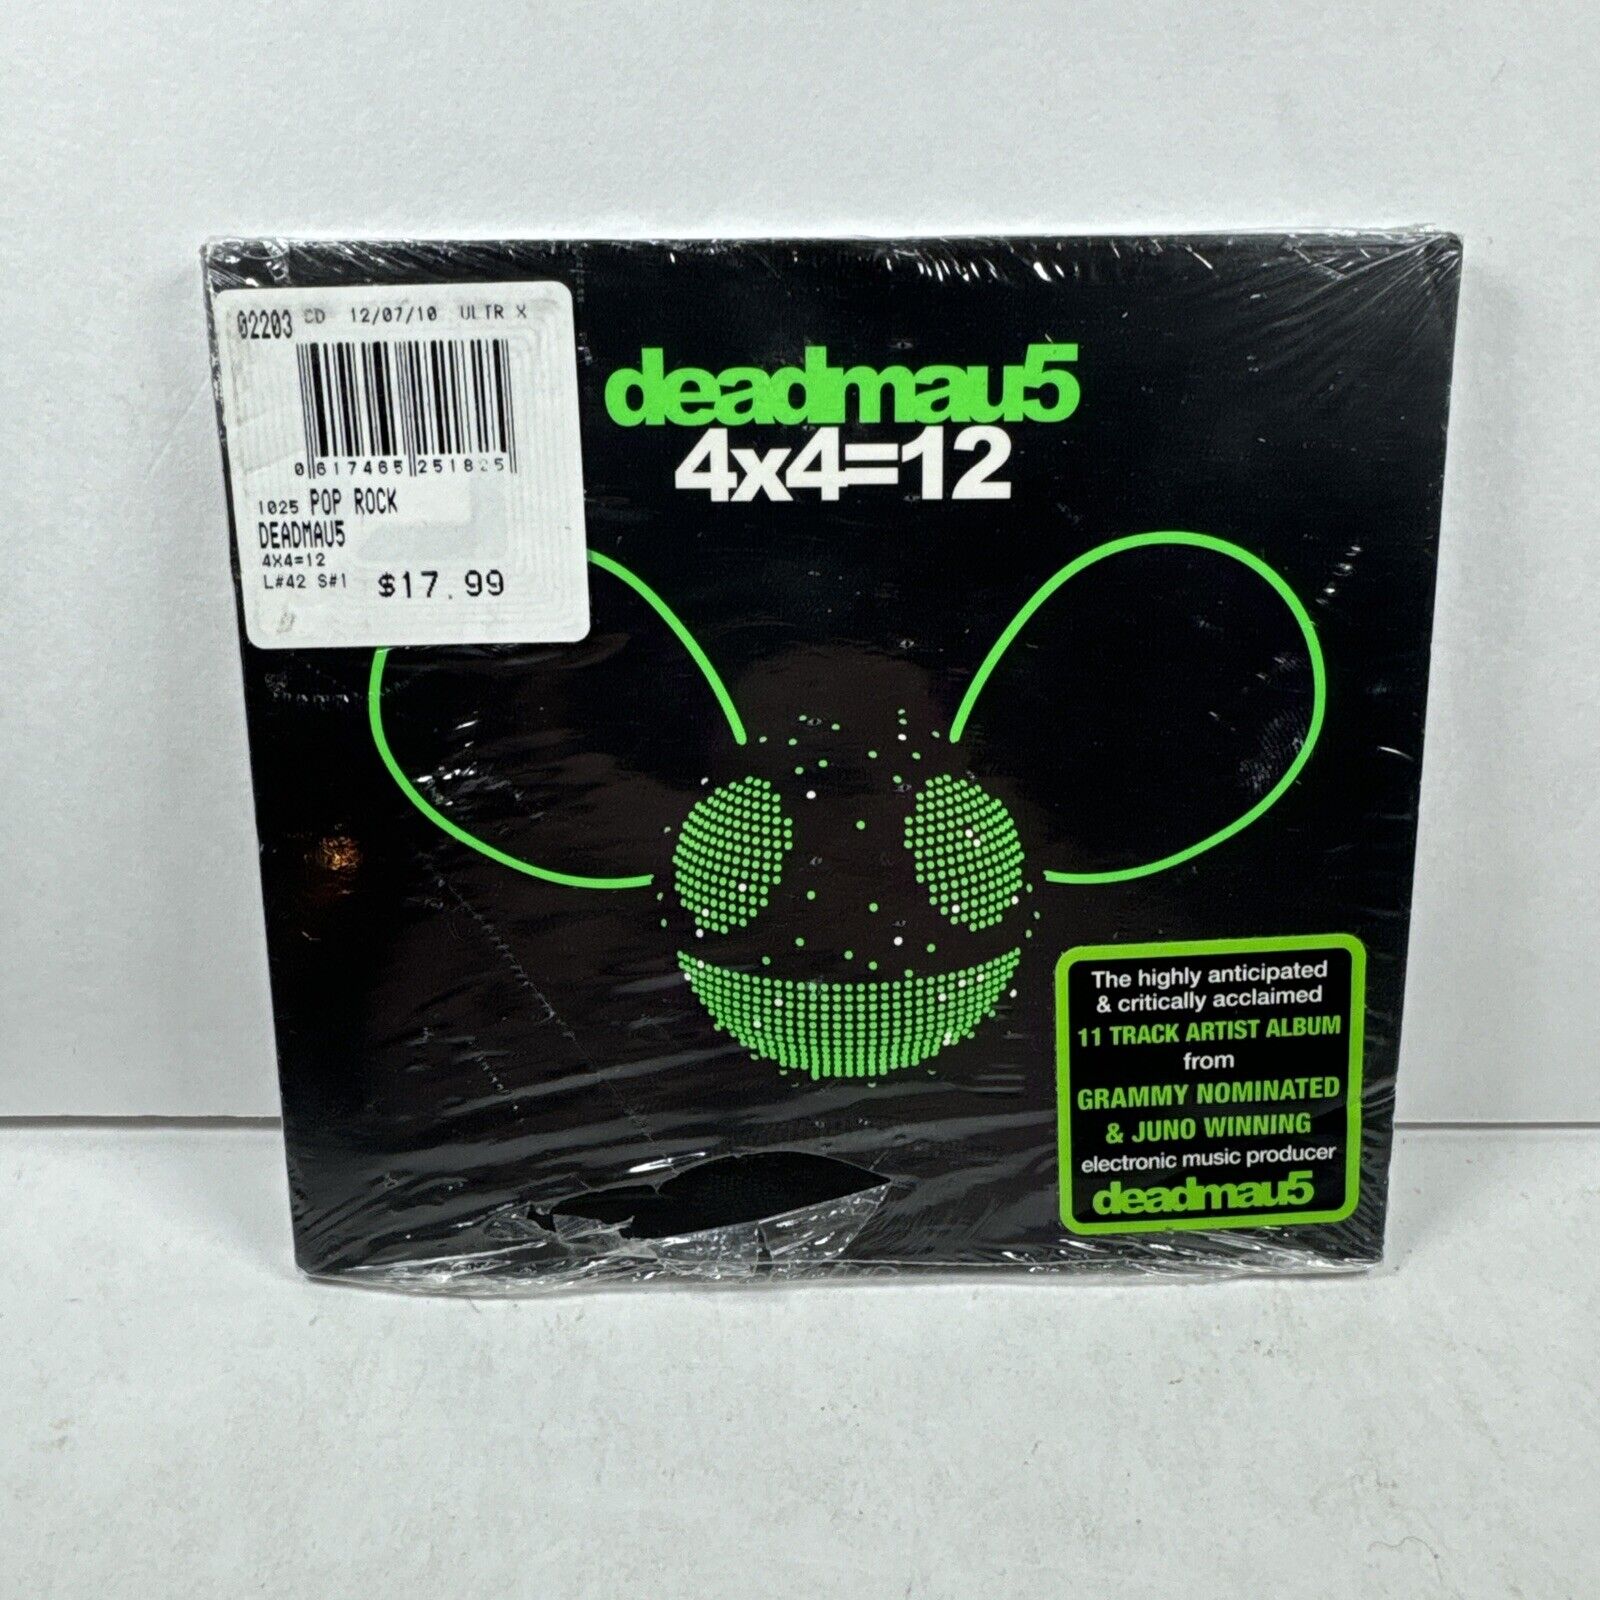 4x4=12 [Digipak] by Deadmau5 (CD, Dec-2010, Mau5trap)